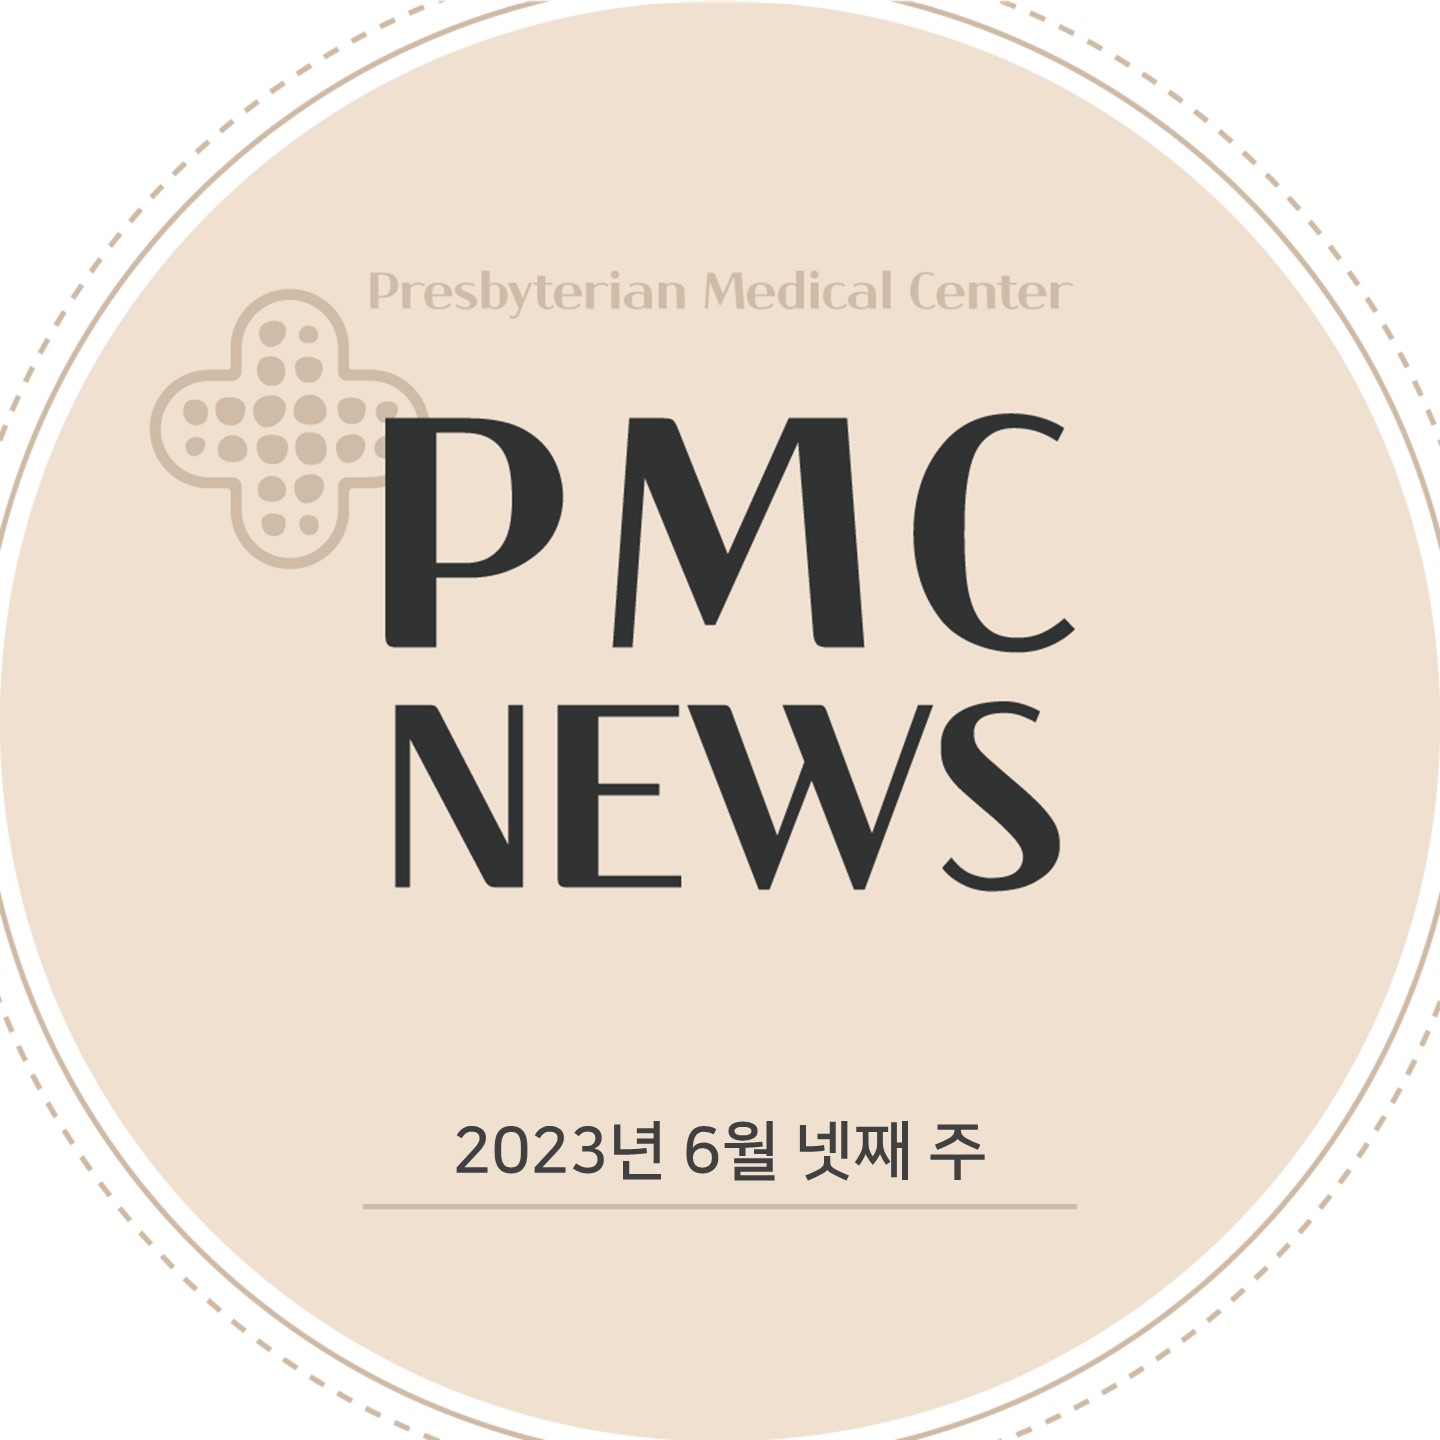 Presbyterian Medical
Center
News
2023년 6월 넷째 주